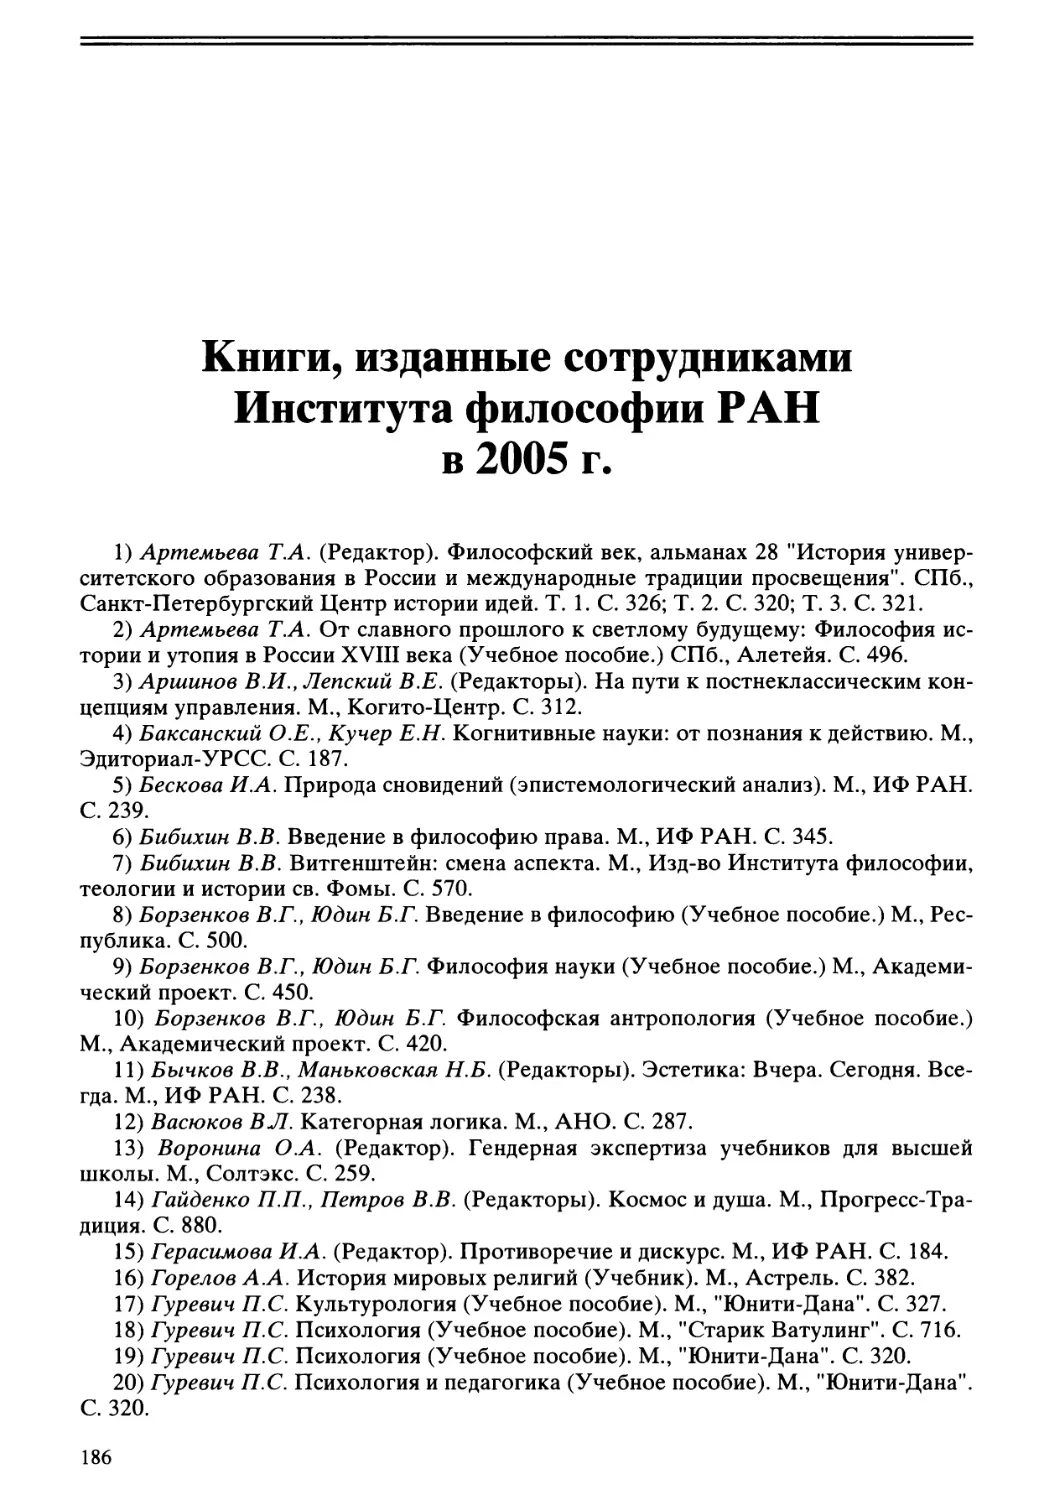 Книги, изданные сотрудниками Института философии РАН в 2005 г